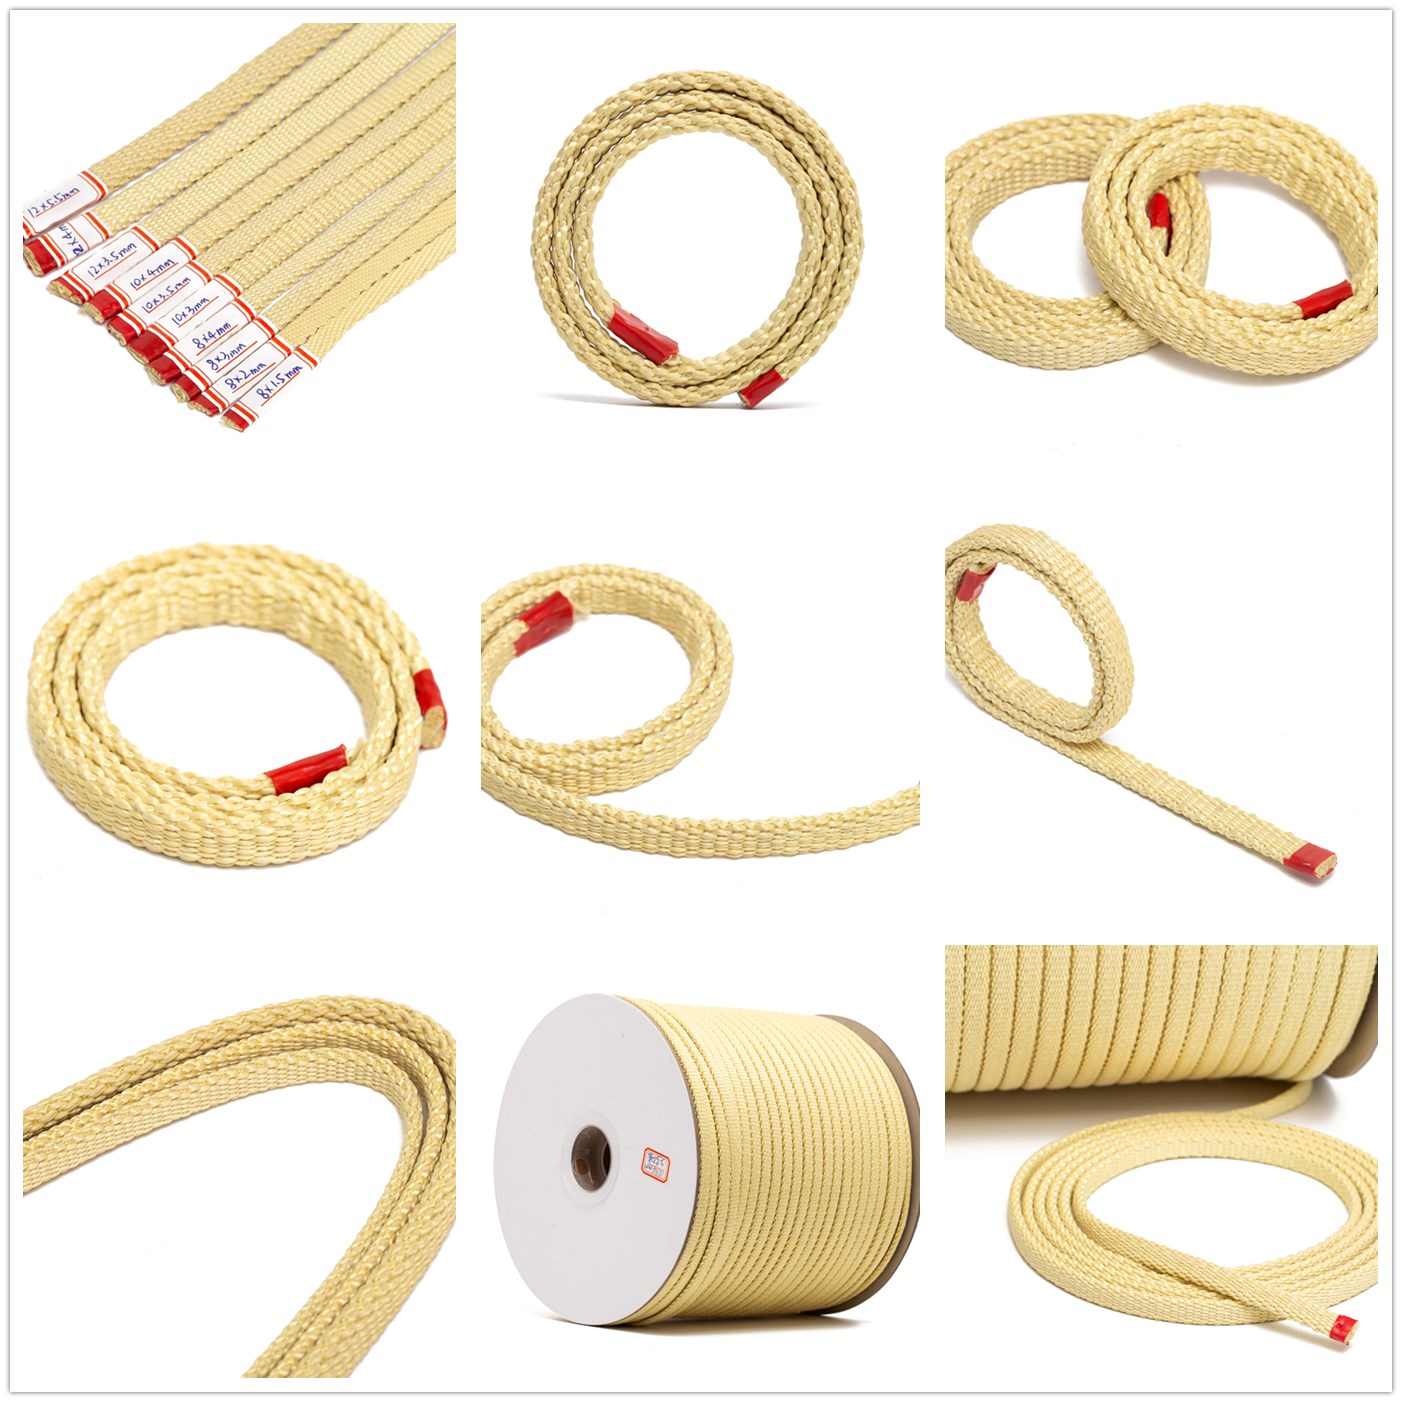 (16) 扁绳kevlar rope (flat).jpg